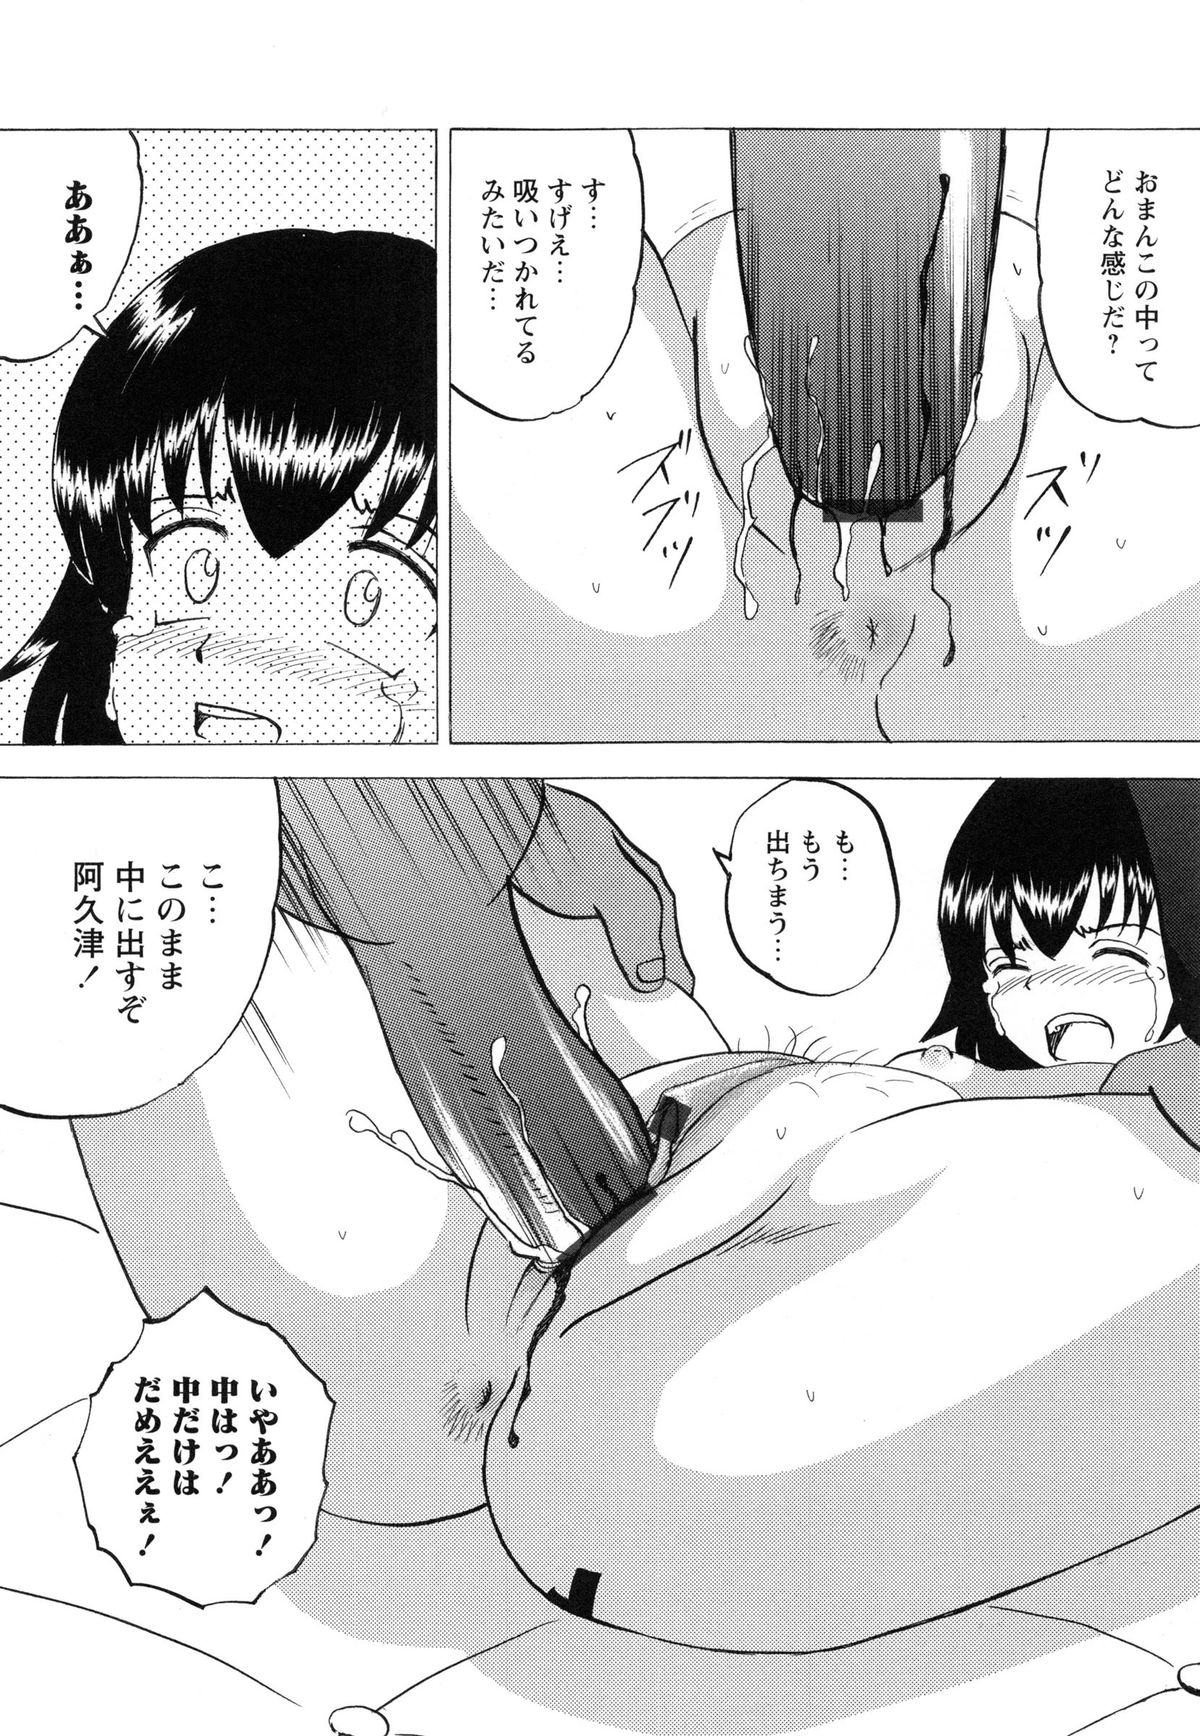 [Mumei] 生意気な女子を全裸にさせて心をへし折ってやったwww